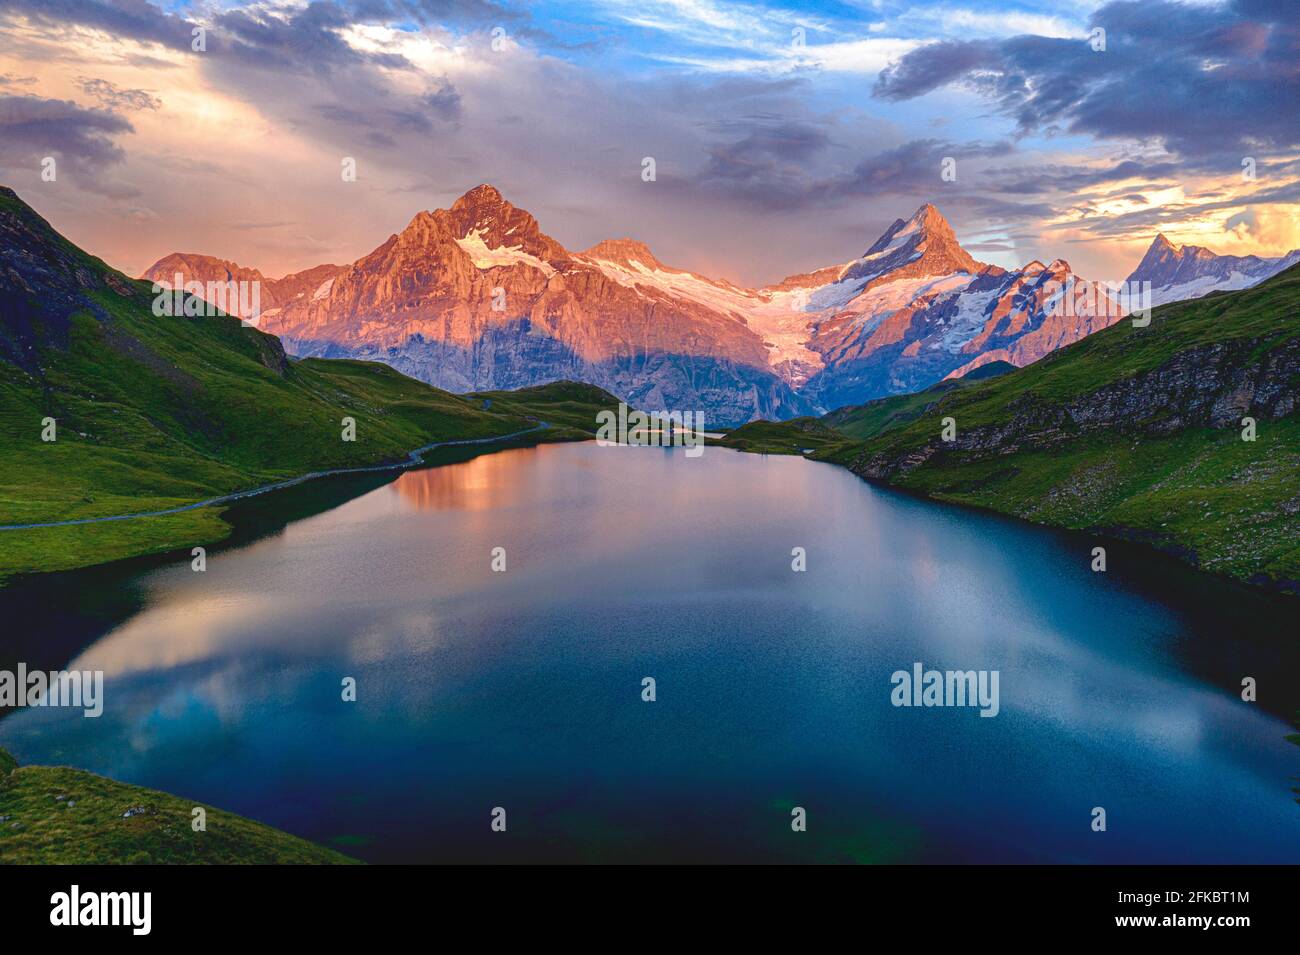 Wetterhorn, Schreckhorn und Finsteraarhorn bei Sonnenuntergang vom Bachalpsee, Grindelwald, Berner Oberland, Schweiz, Europa Stockfoto